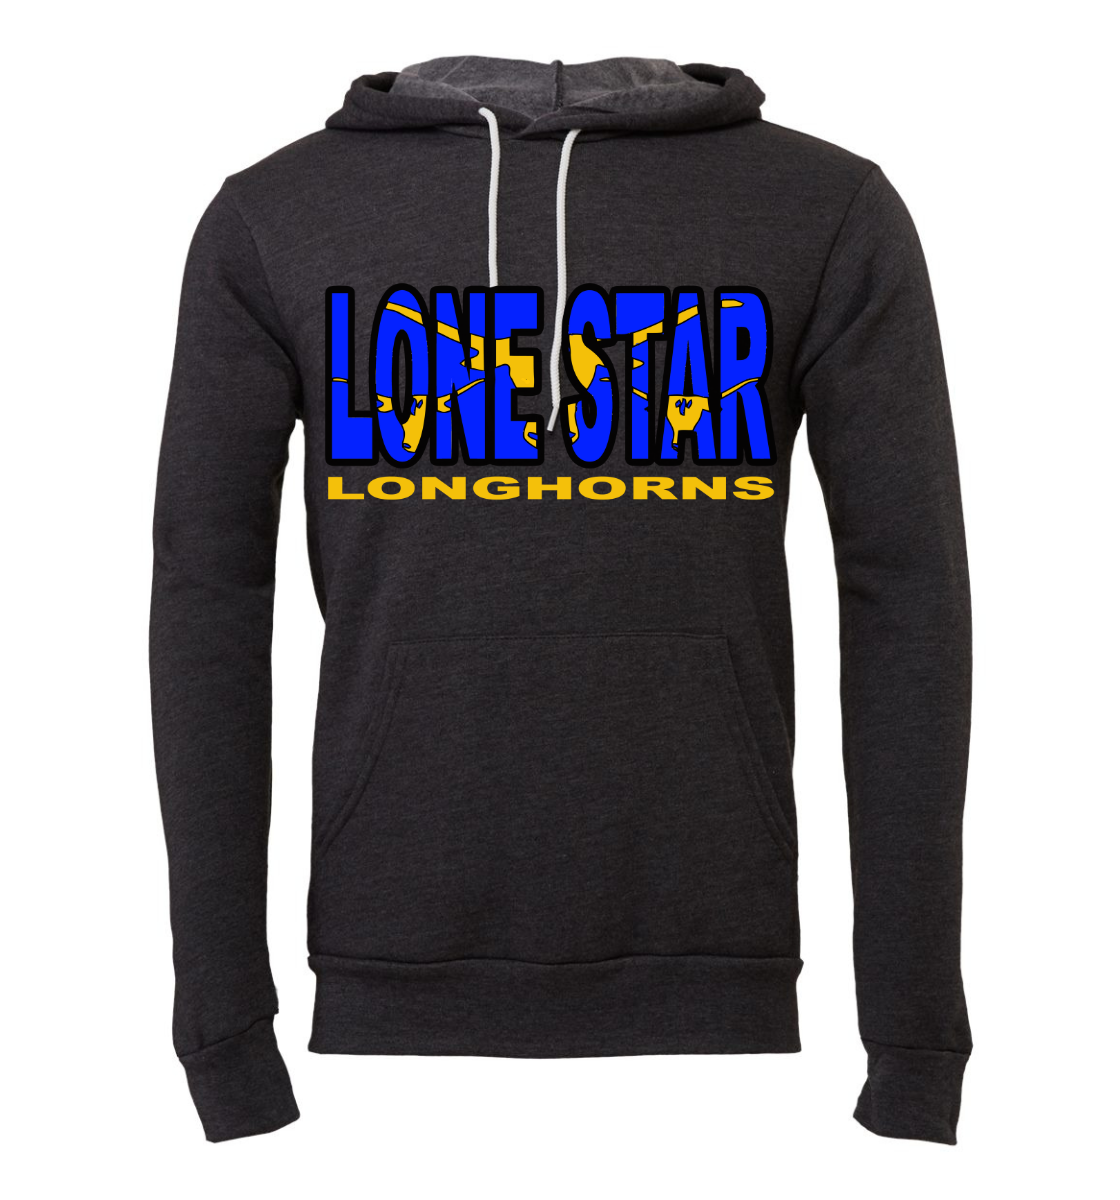 lone star longhorns hoodie - unisex - elevate your spirit!